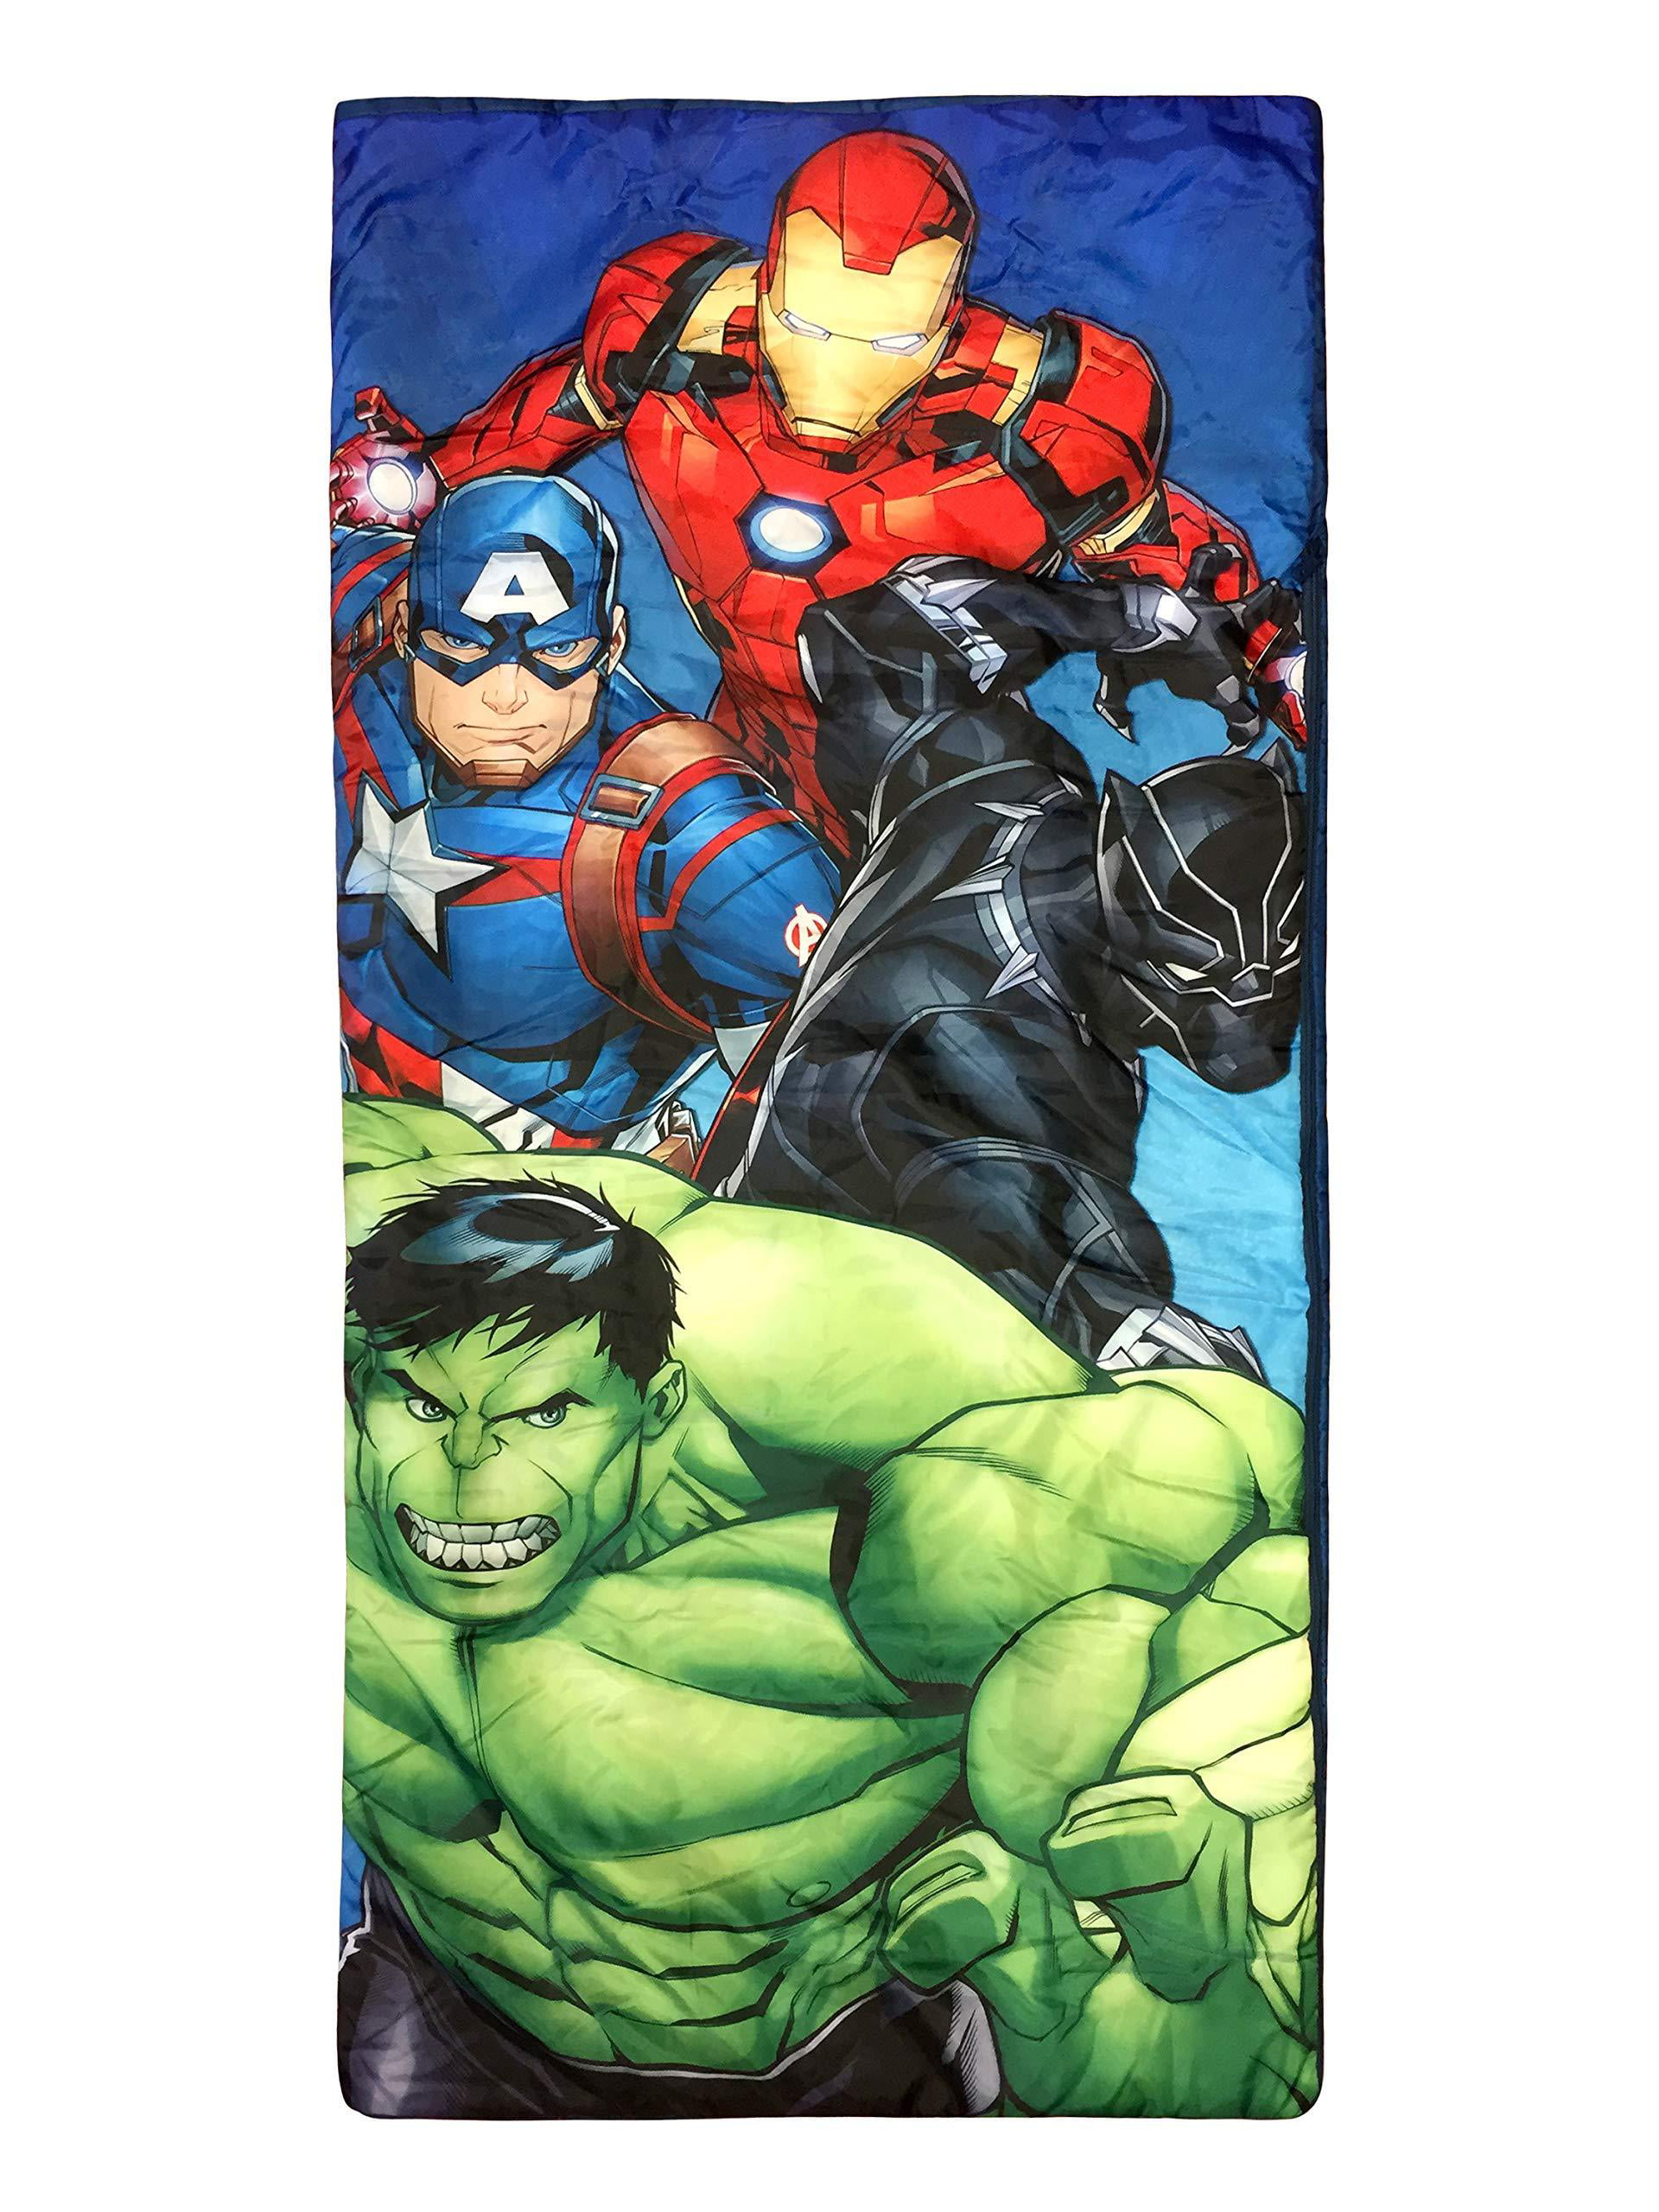 Kids Euroswan Marvel Avengers Sleeping Bag 140 x 70 cm 